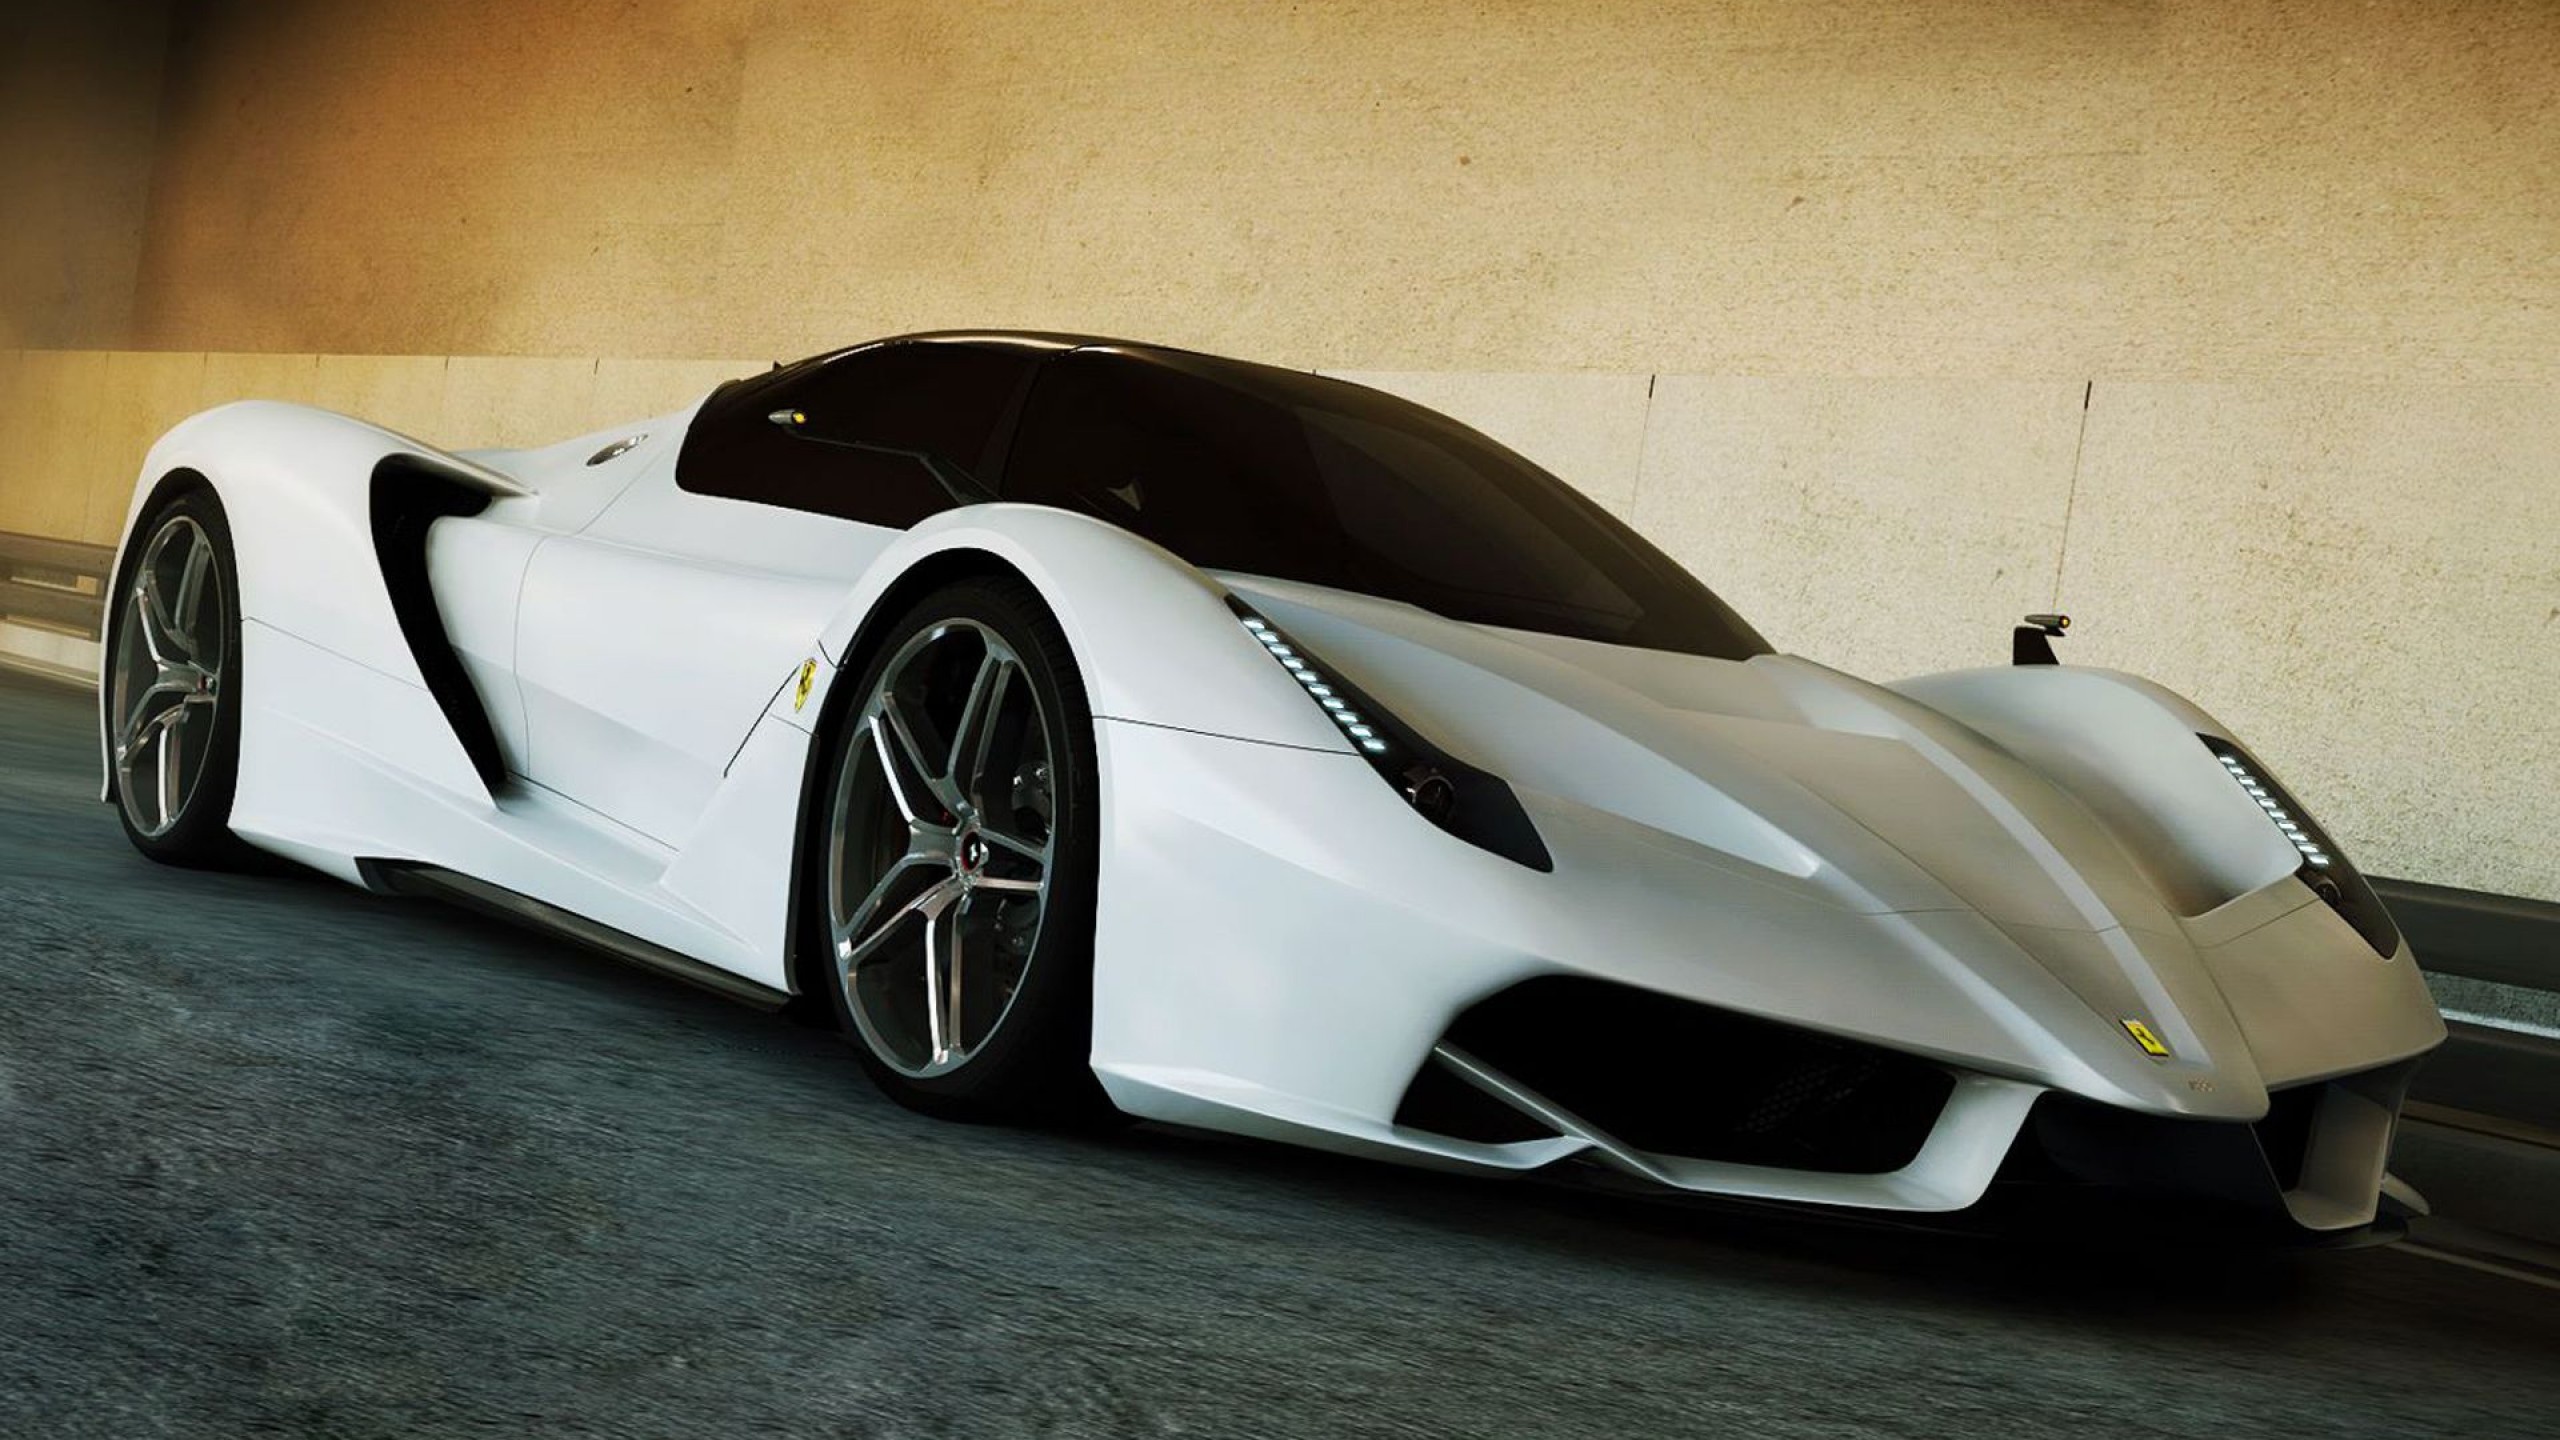 ferrari f70 conceptcar super car pictures desktop 2560x1440